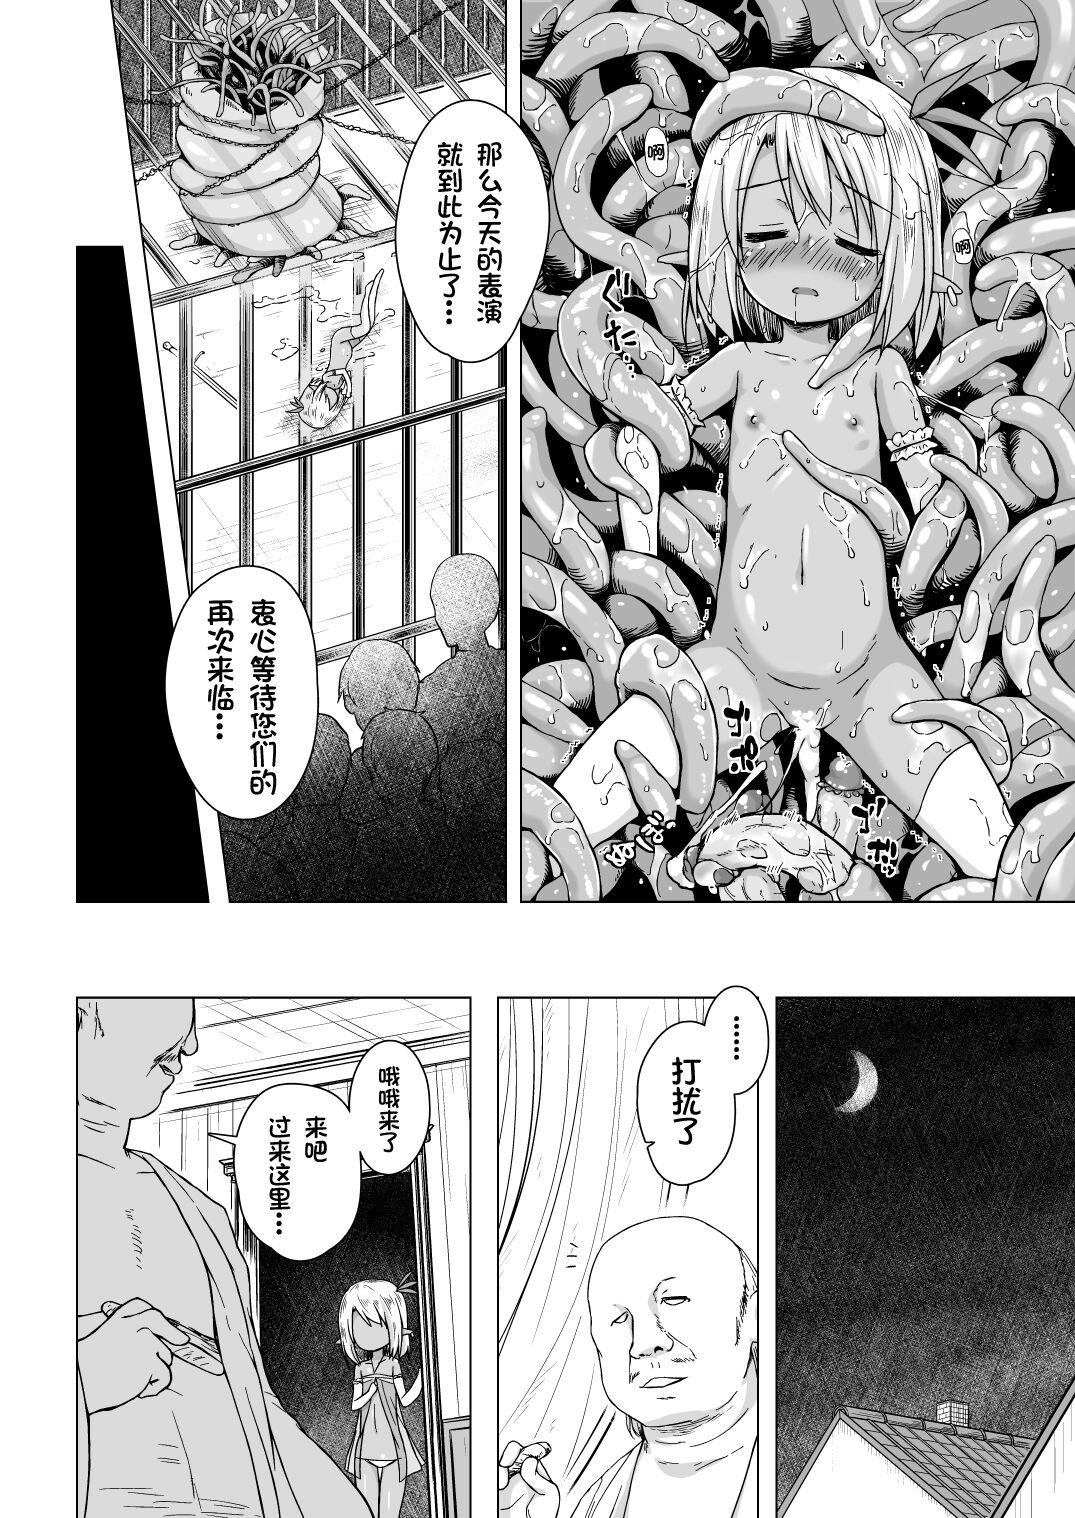 Clothed Sex Namida no Hana no Saku Tokoro 2 - Original Oiled - Page 9